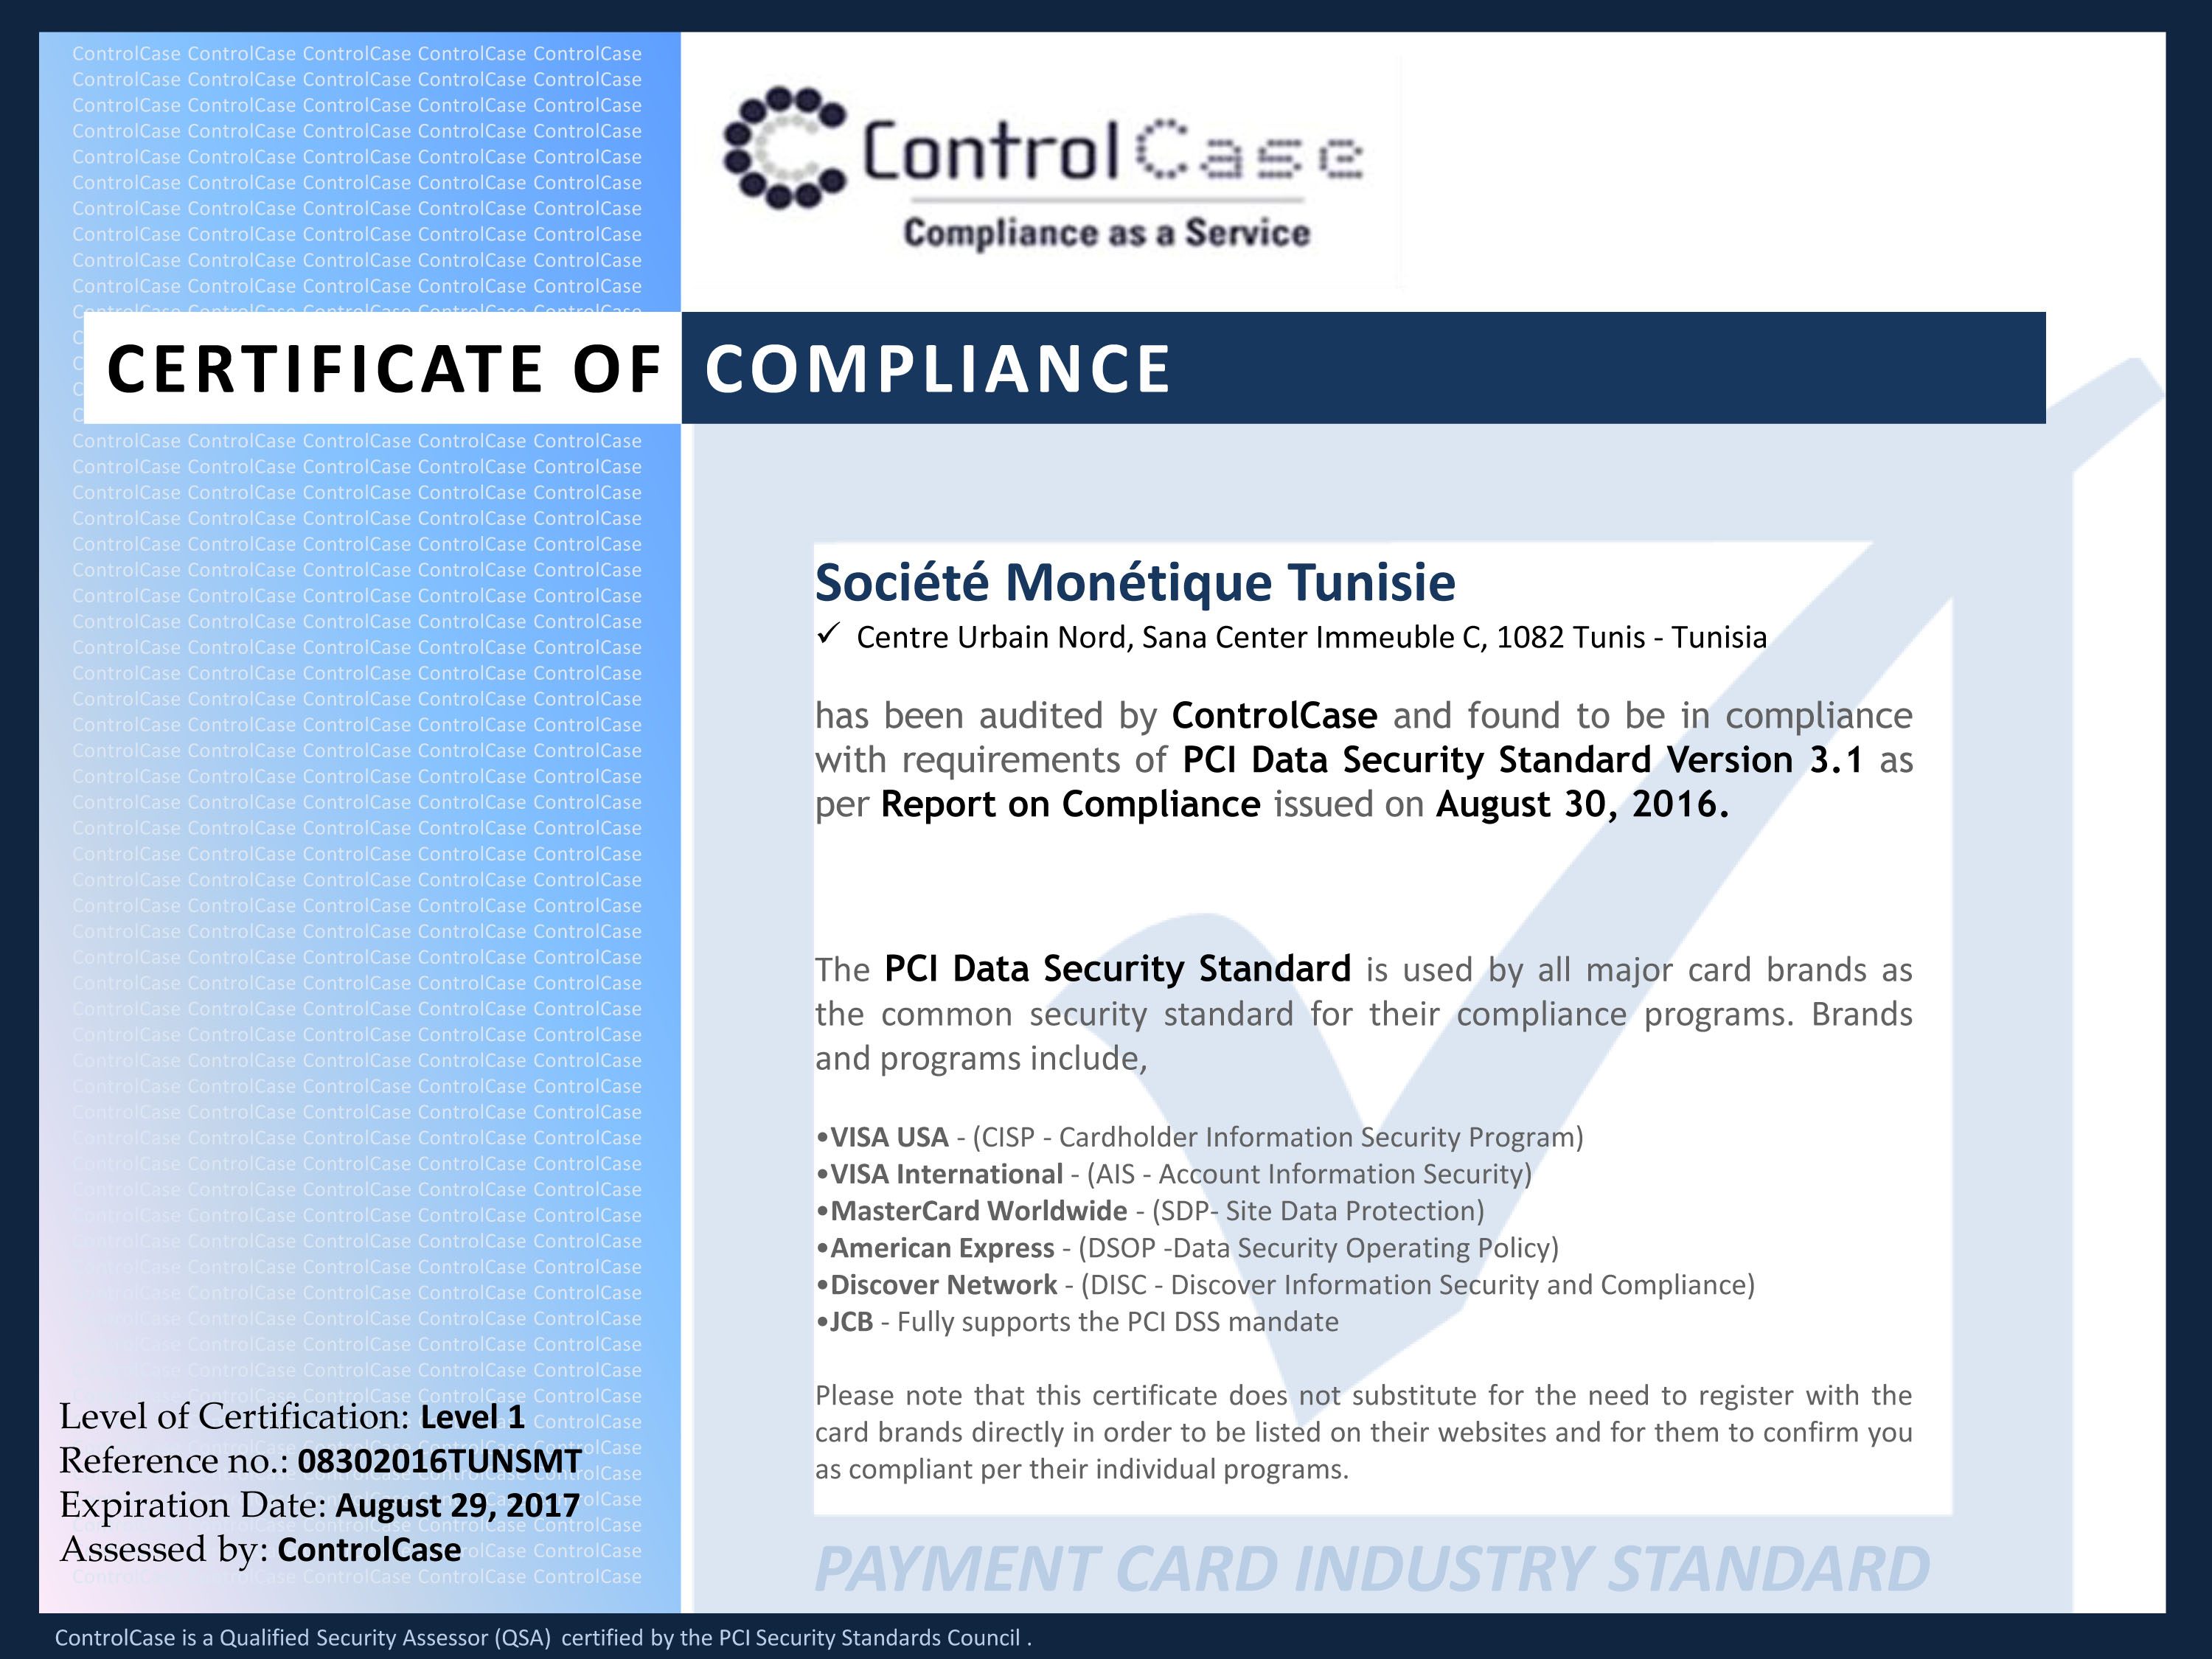 Monétique-Tunisie obtient la certification PCI-DSS